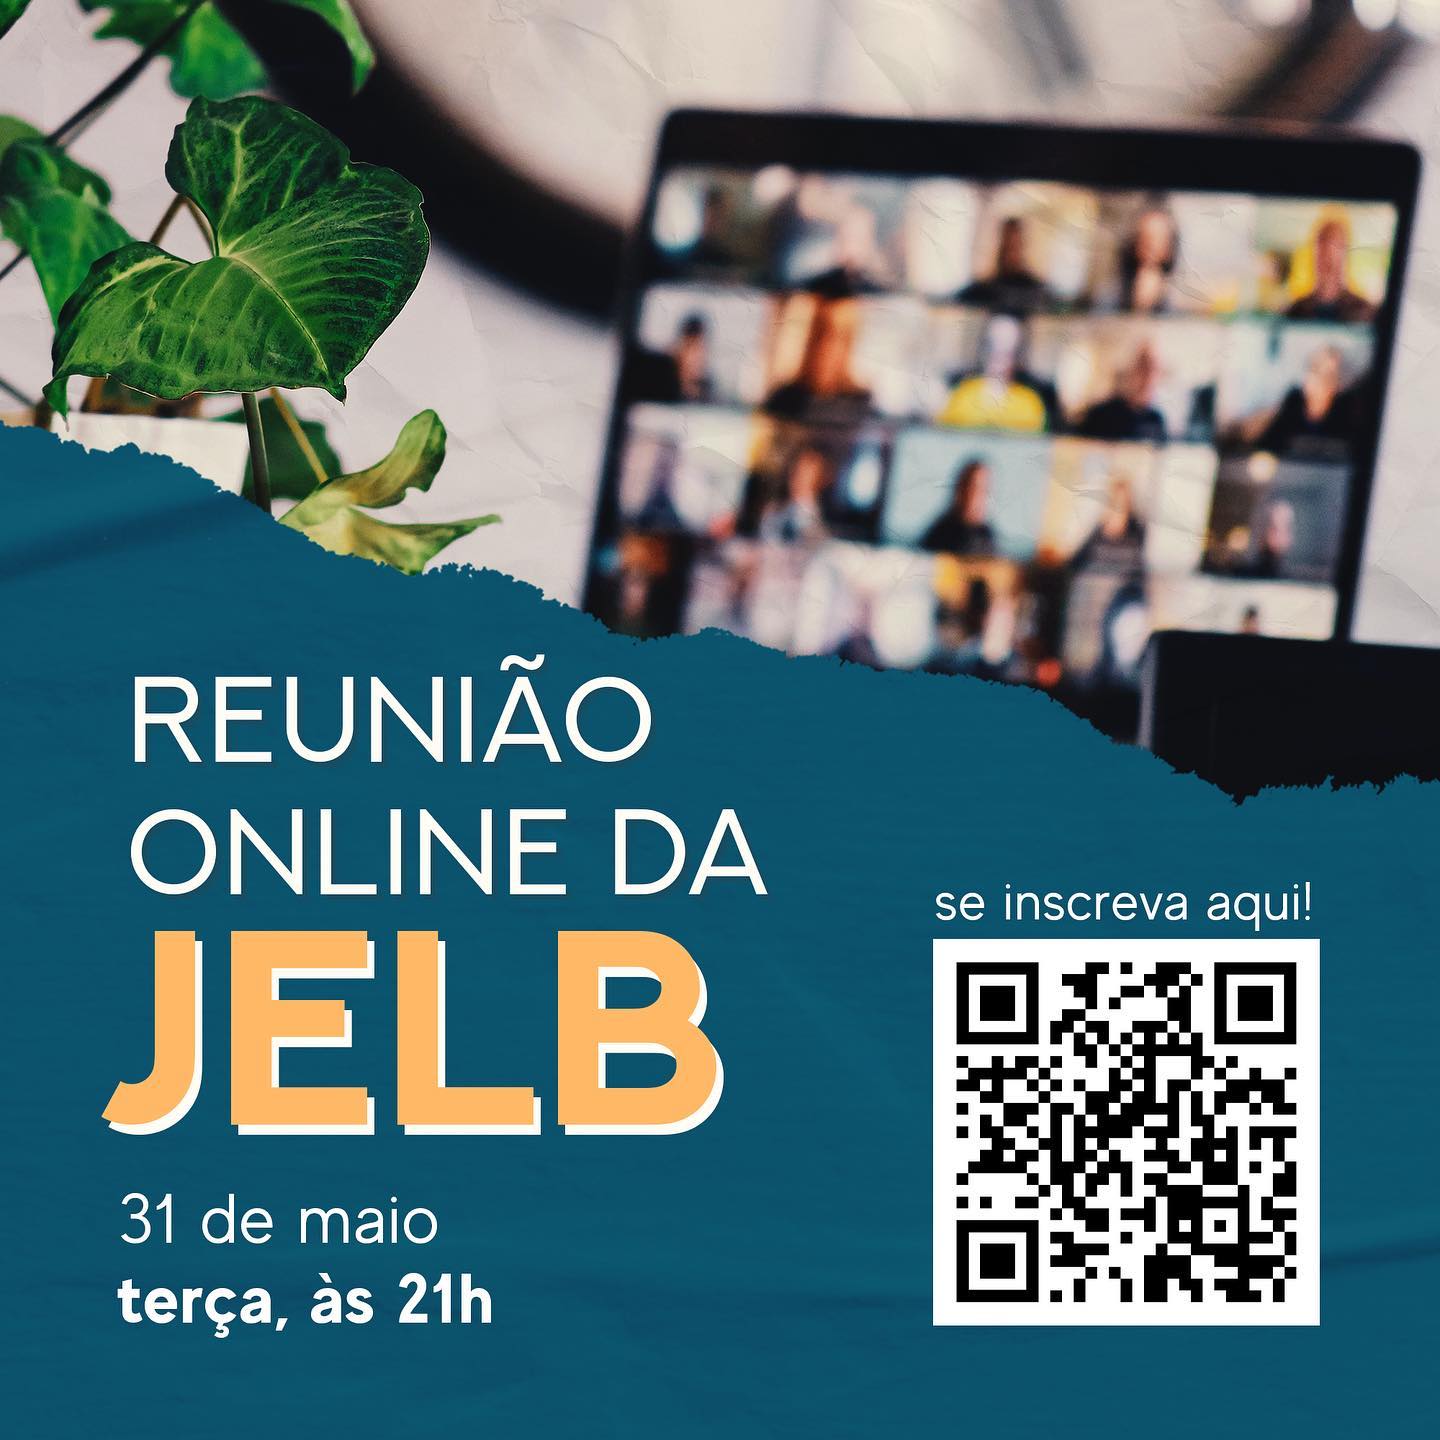 Reunião on-line da JELB